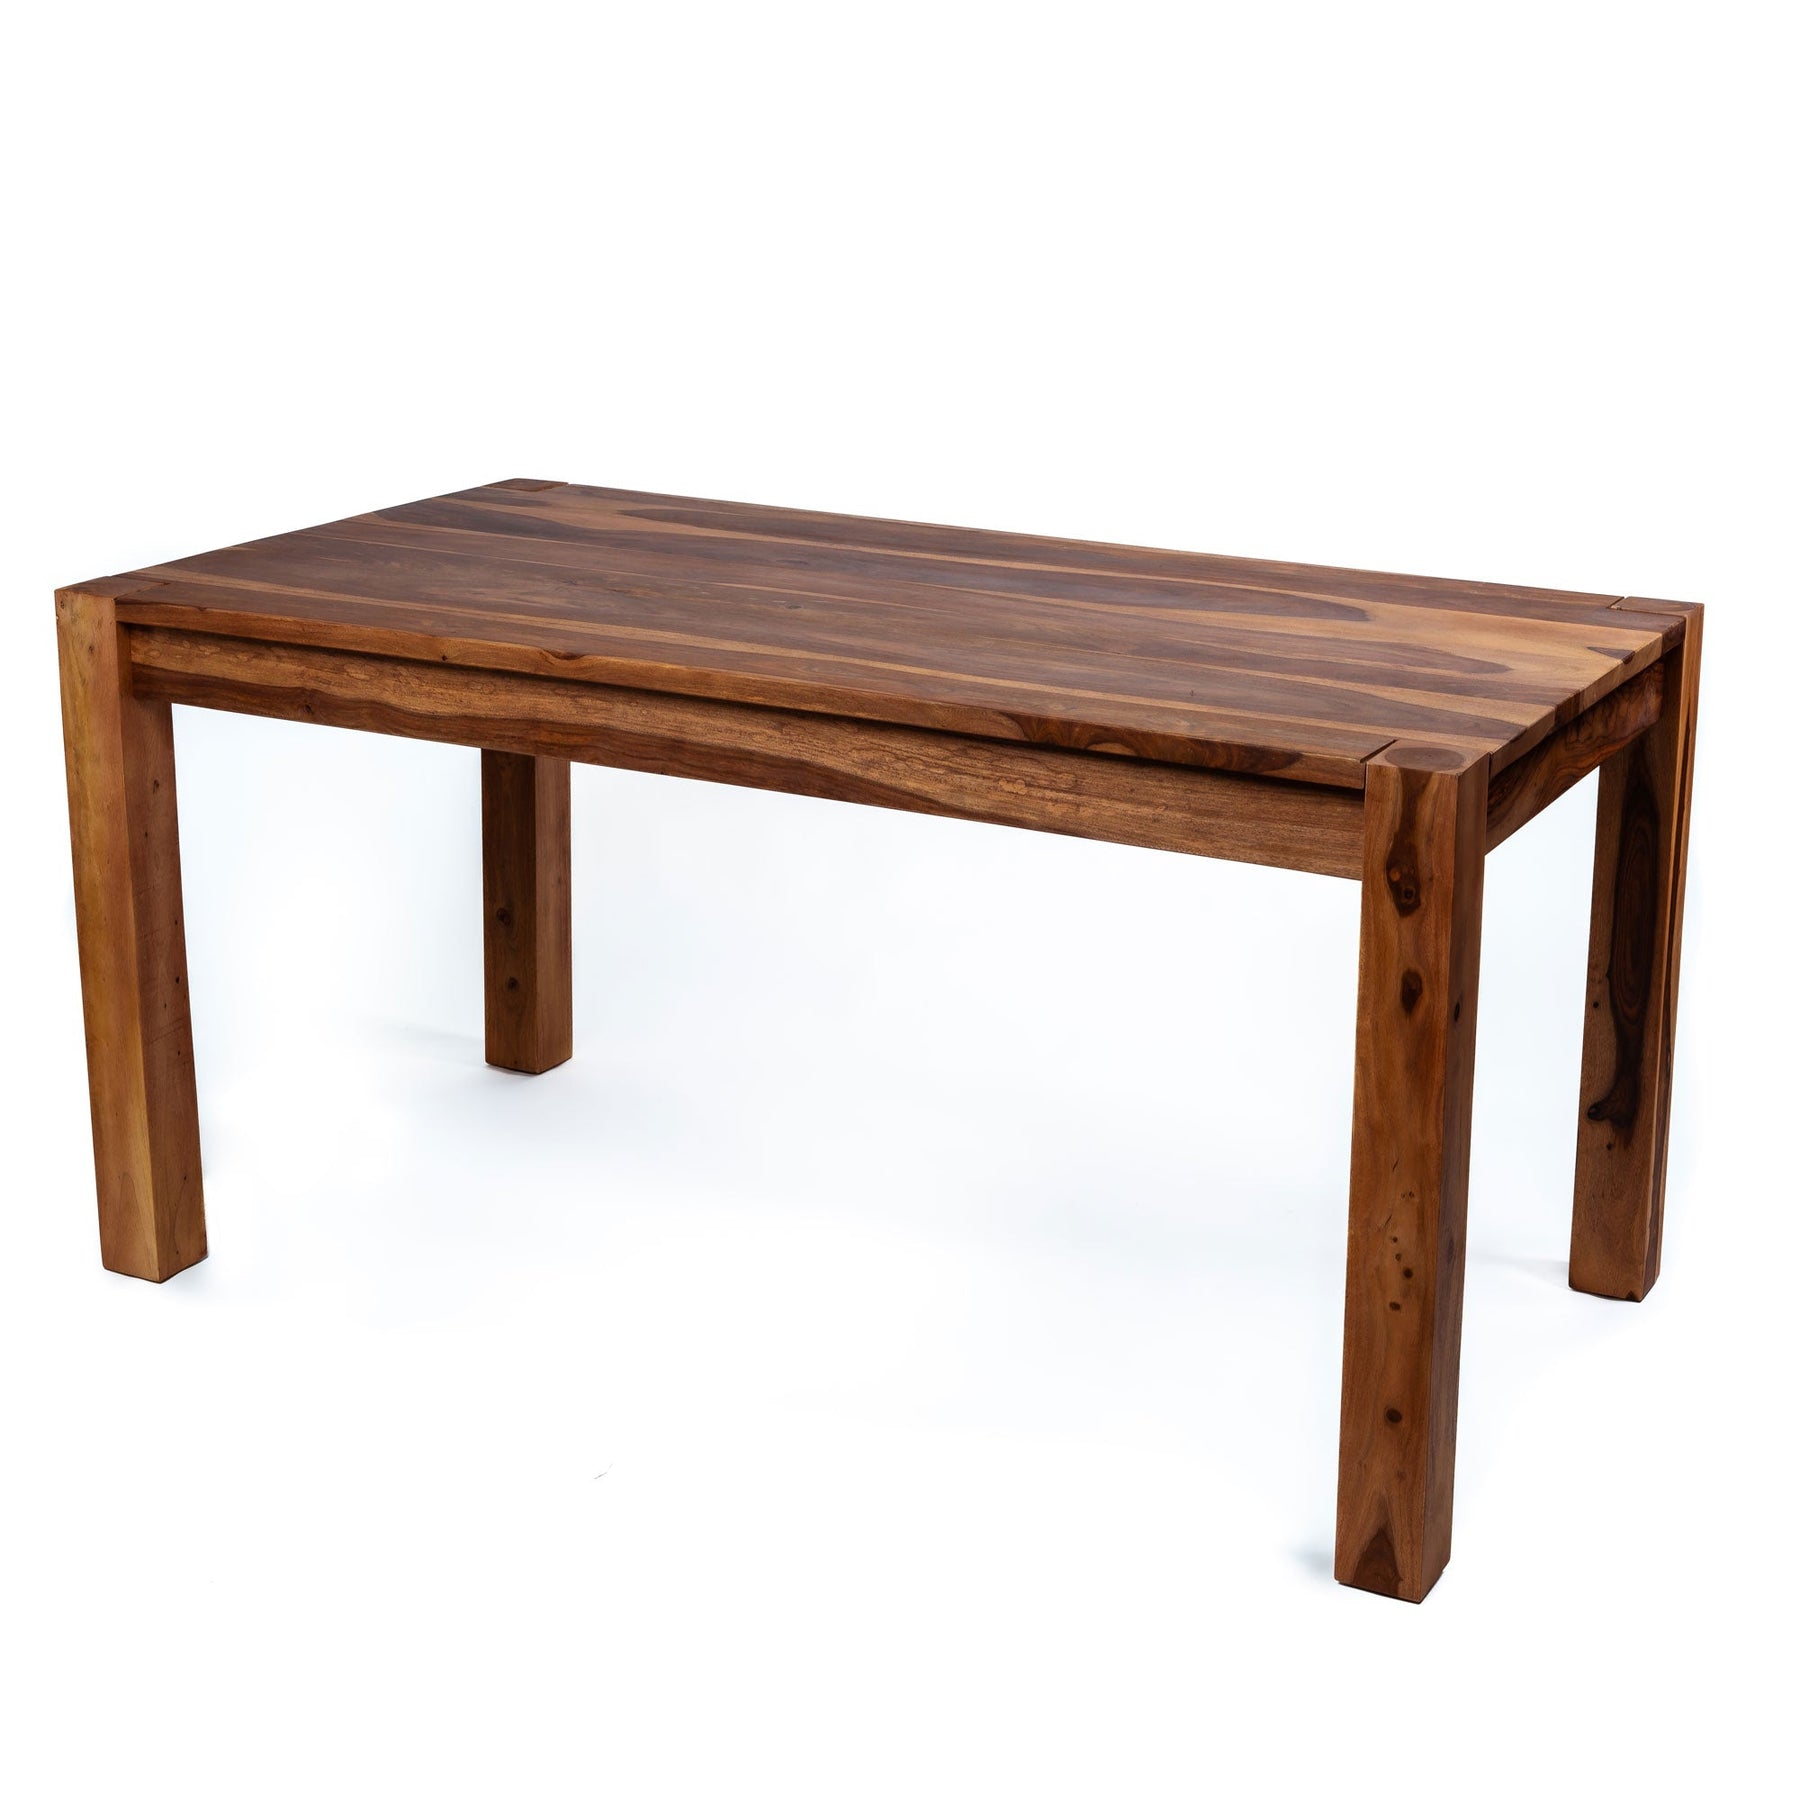 Table à manger Zen taille moyenne | Table de salle à manger en bois | Table à manger rectangulaire